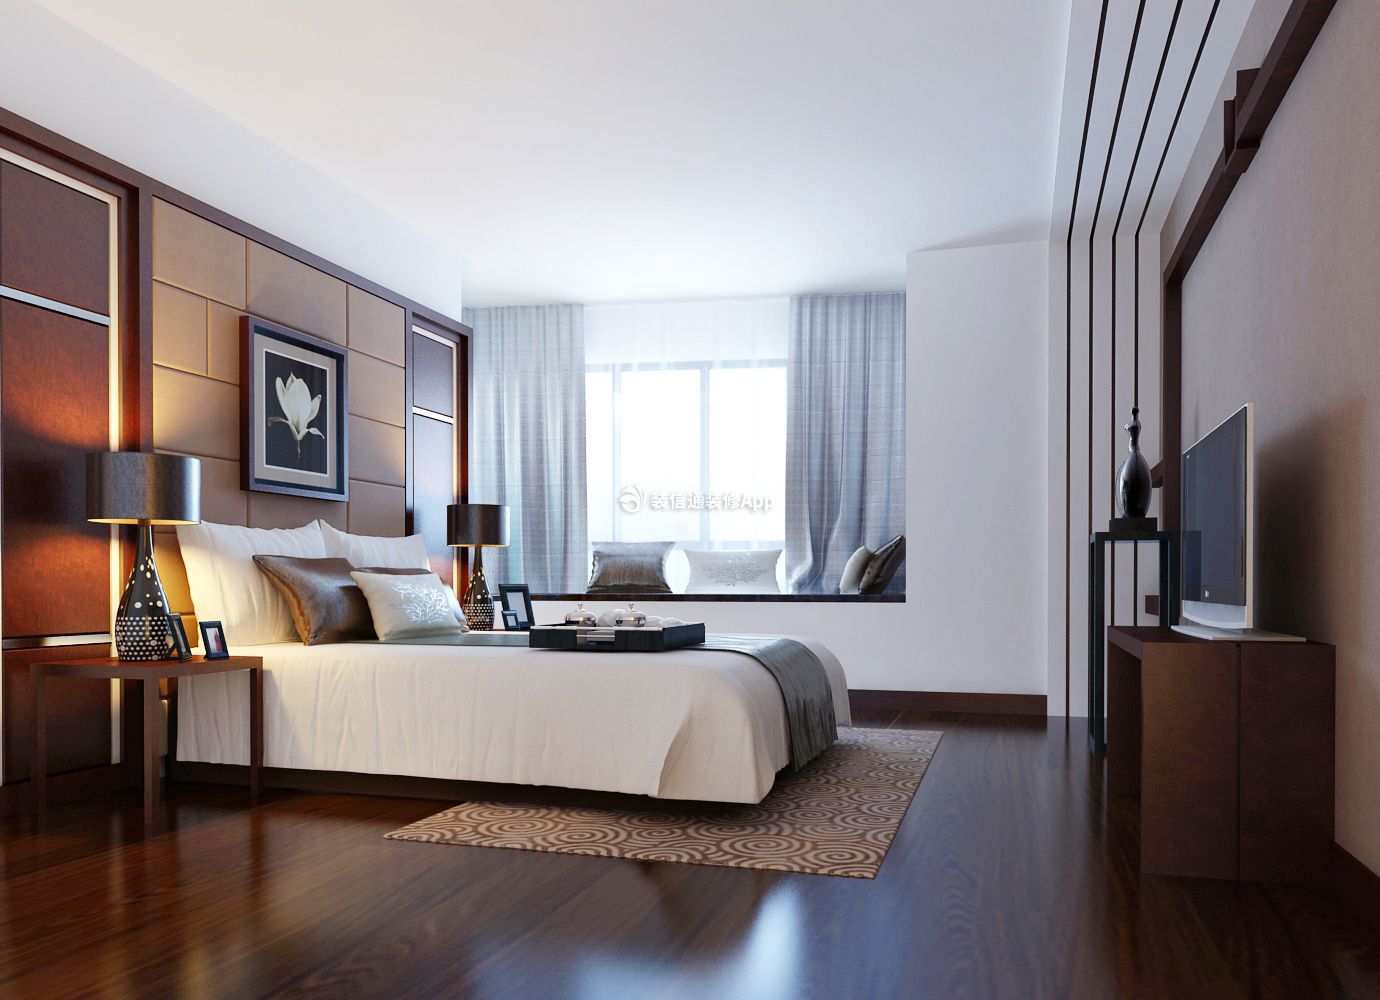 深圳中式风格新房主卧室内装修设计图片